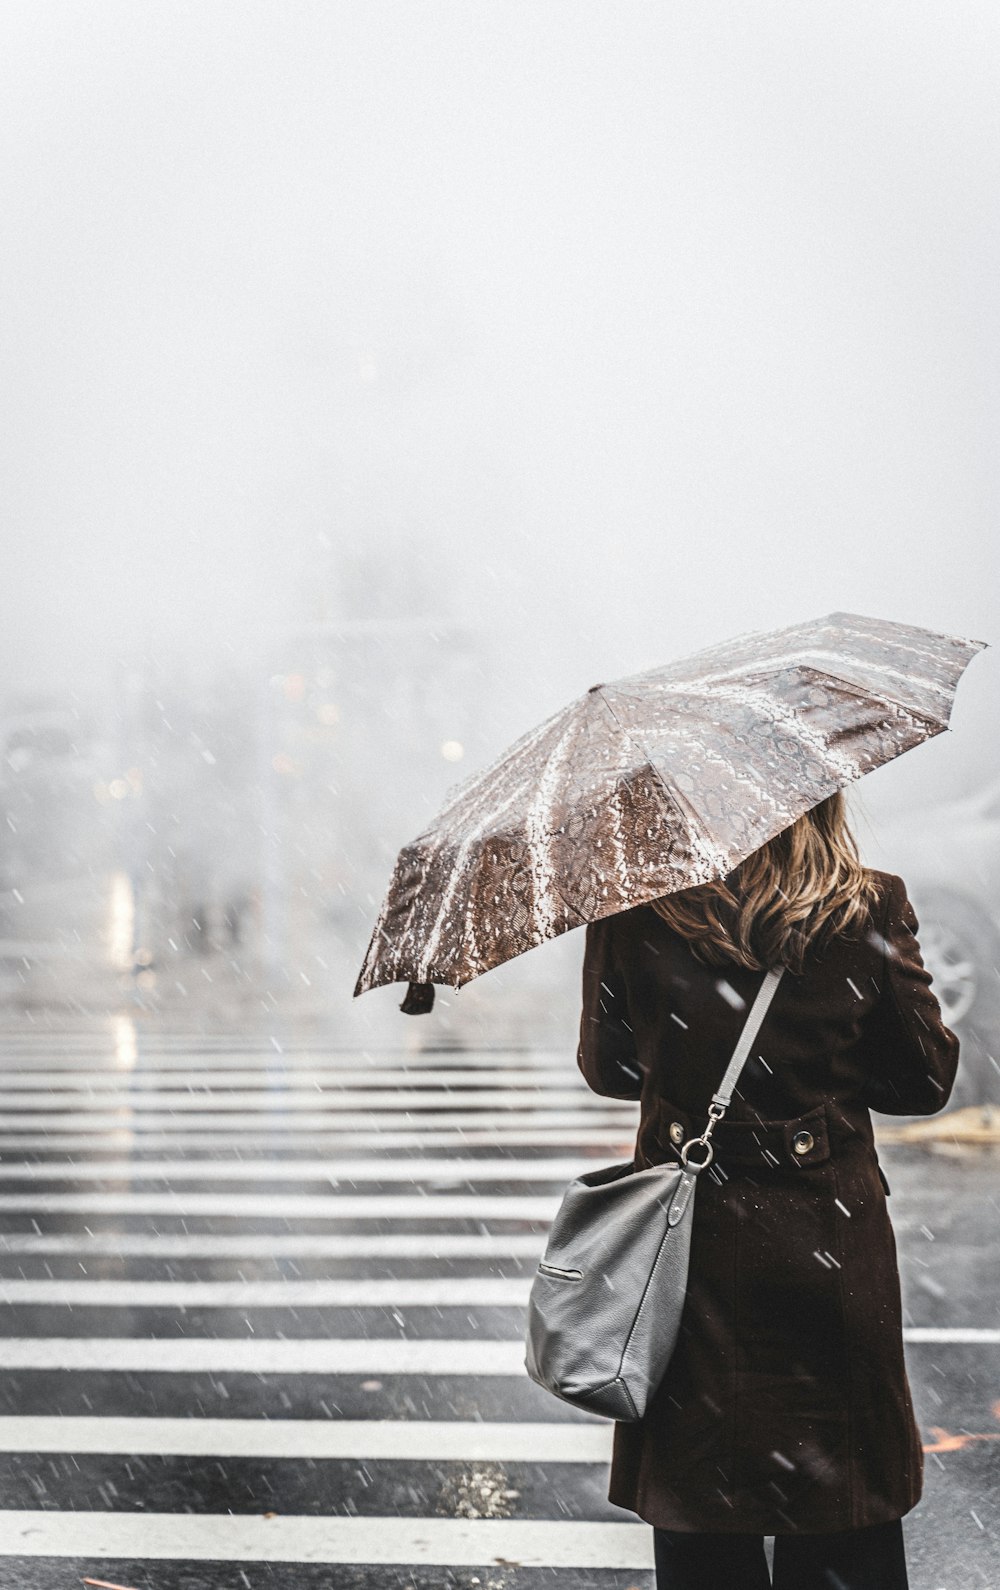 woman walking on pedestrian lane while holding umbrella